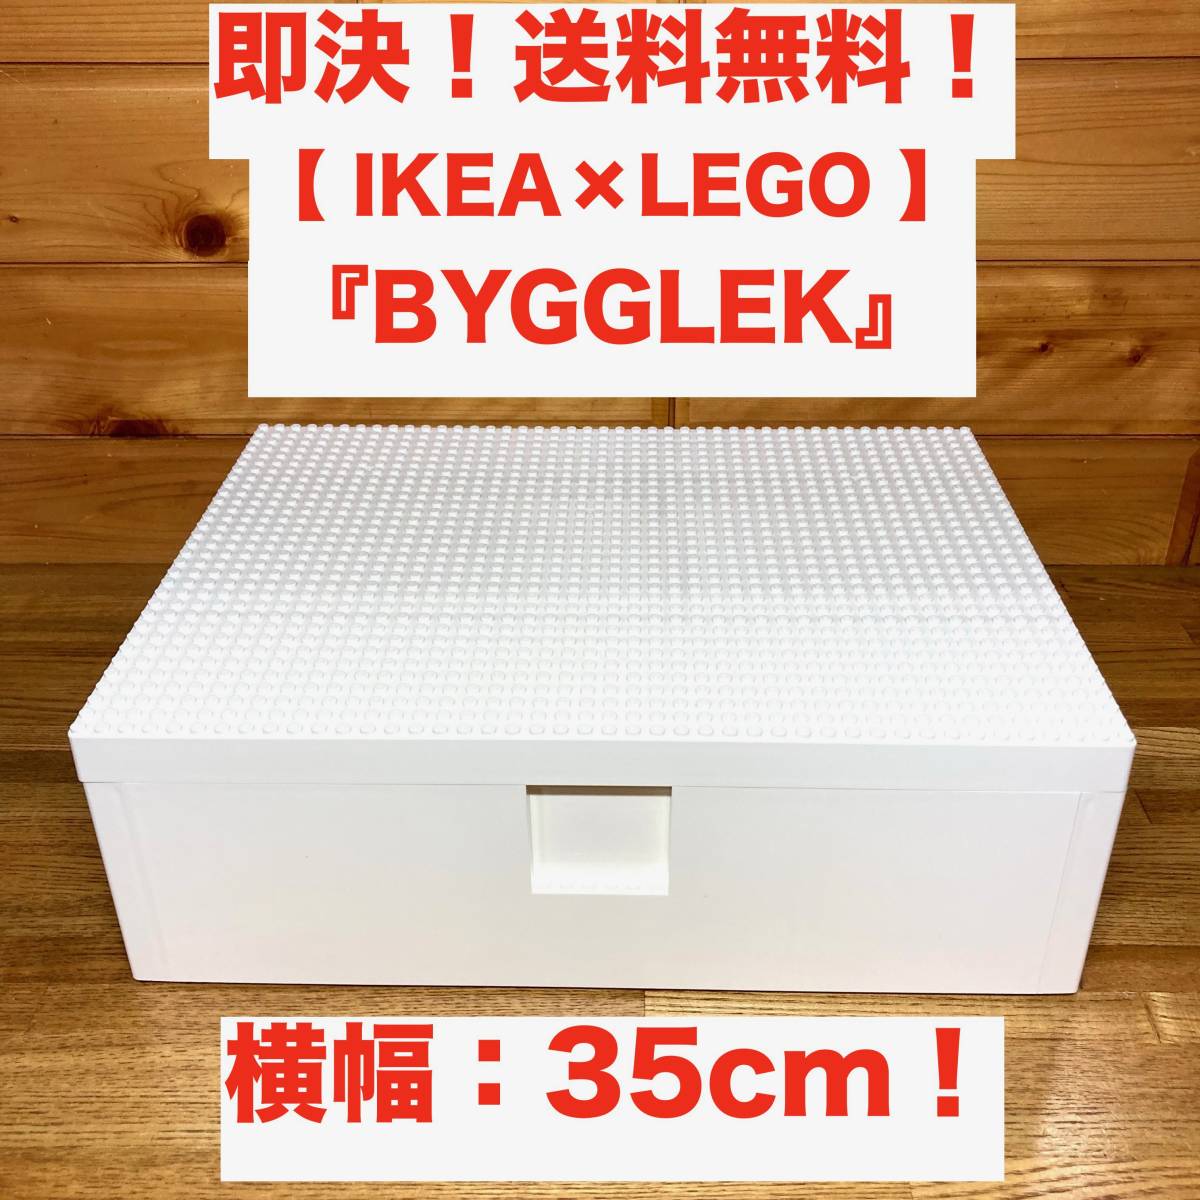 IKEA BYGGLEK ビッグレク ®ボックス 大サイズ - カラーボックス